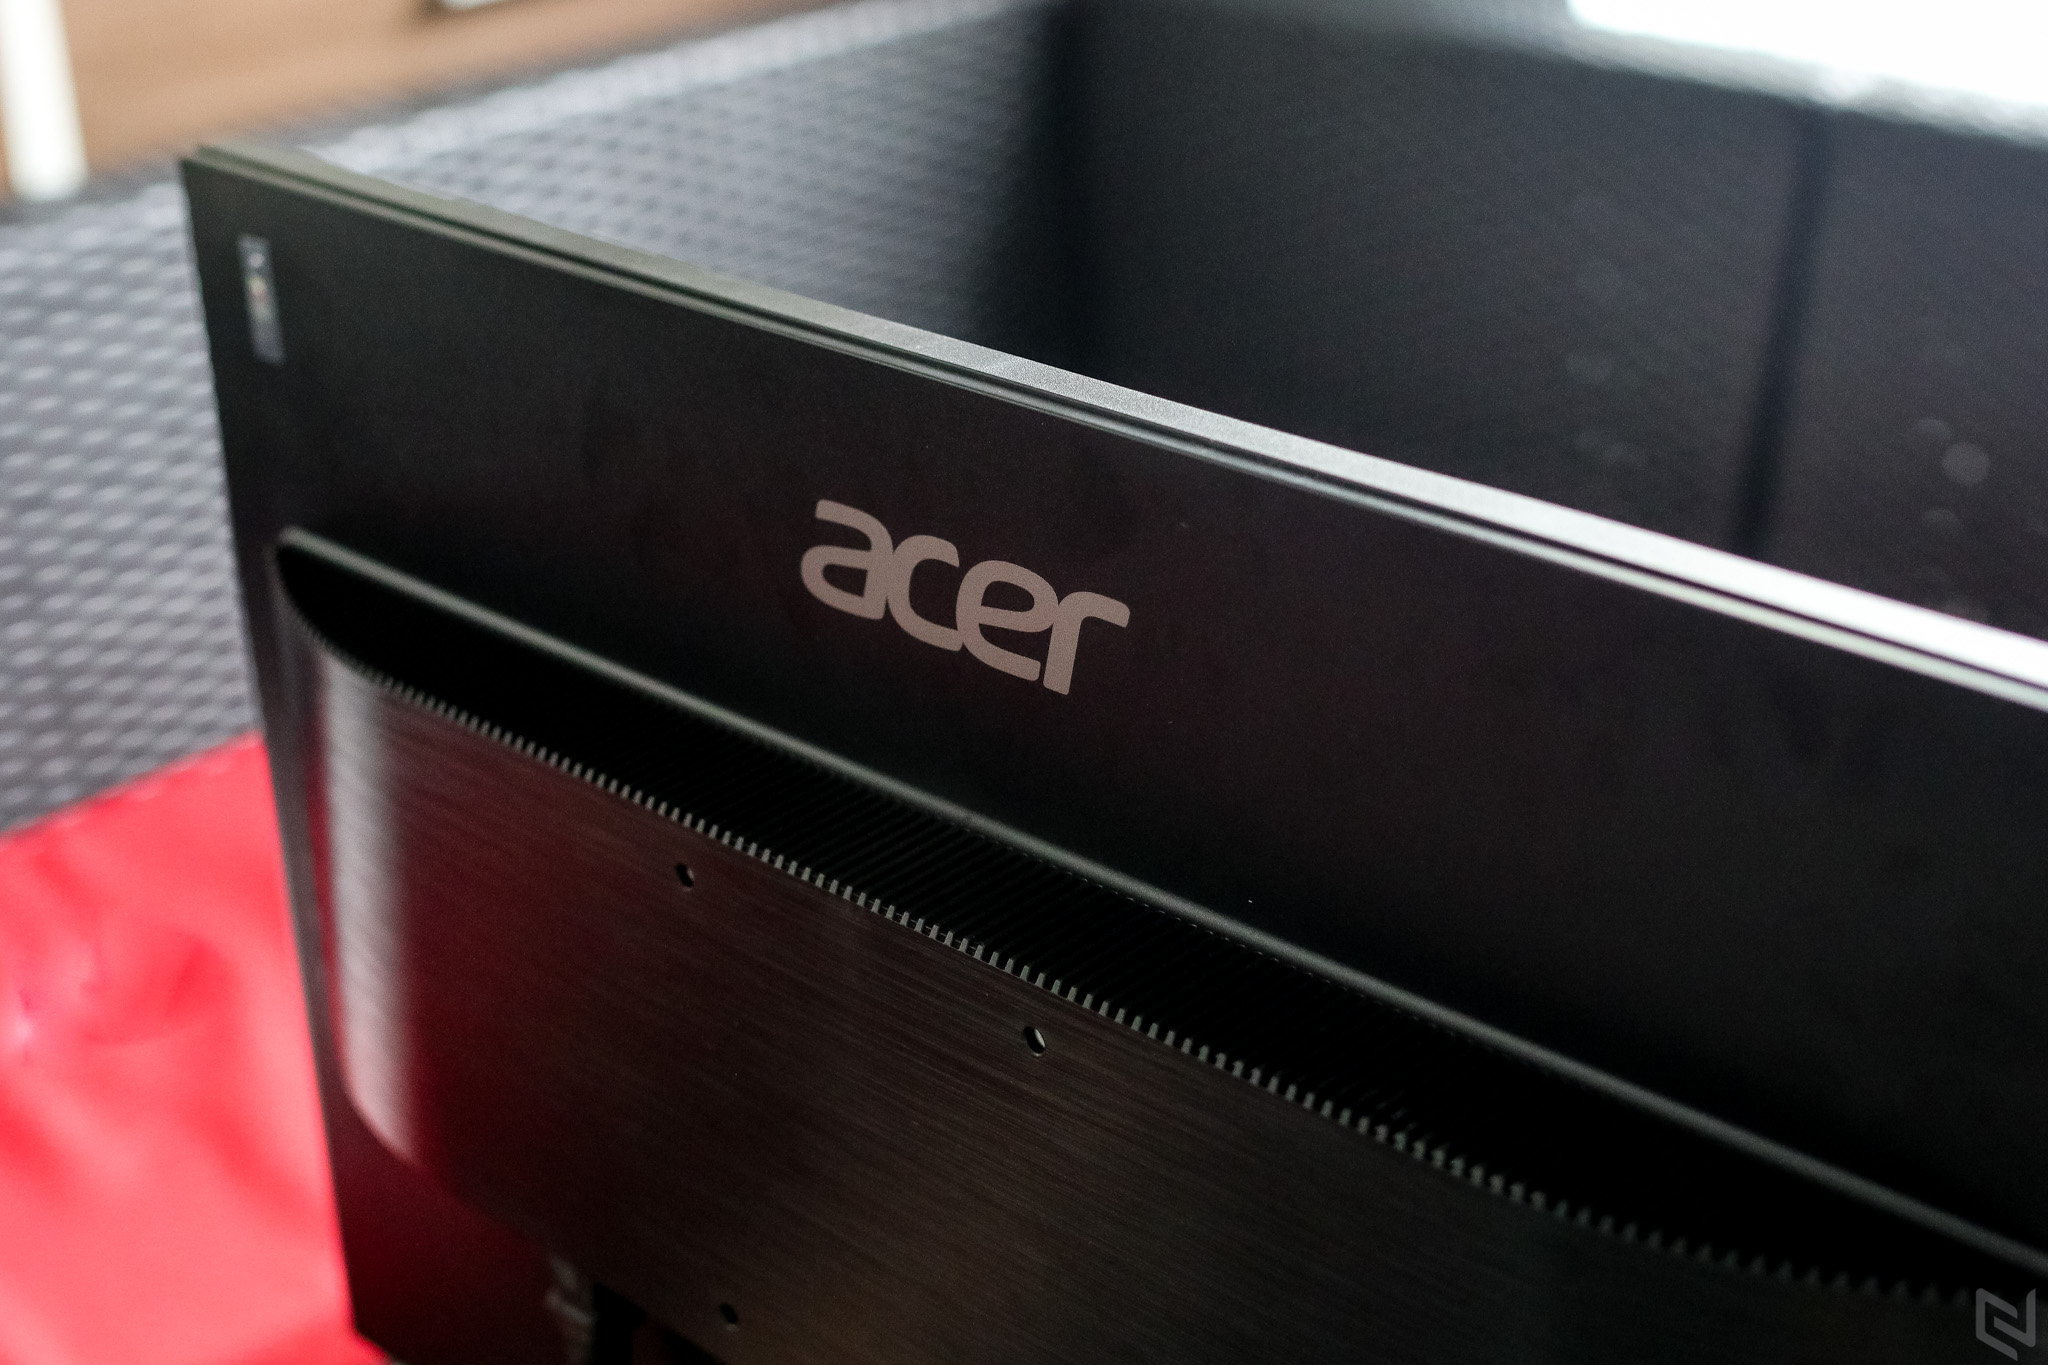 Trên tay màn hình Acer ET241 24-inches: Đẹp và có giá rất tốt